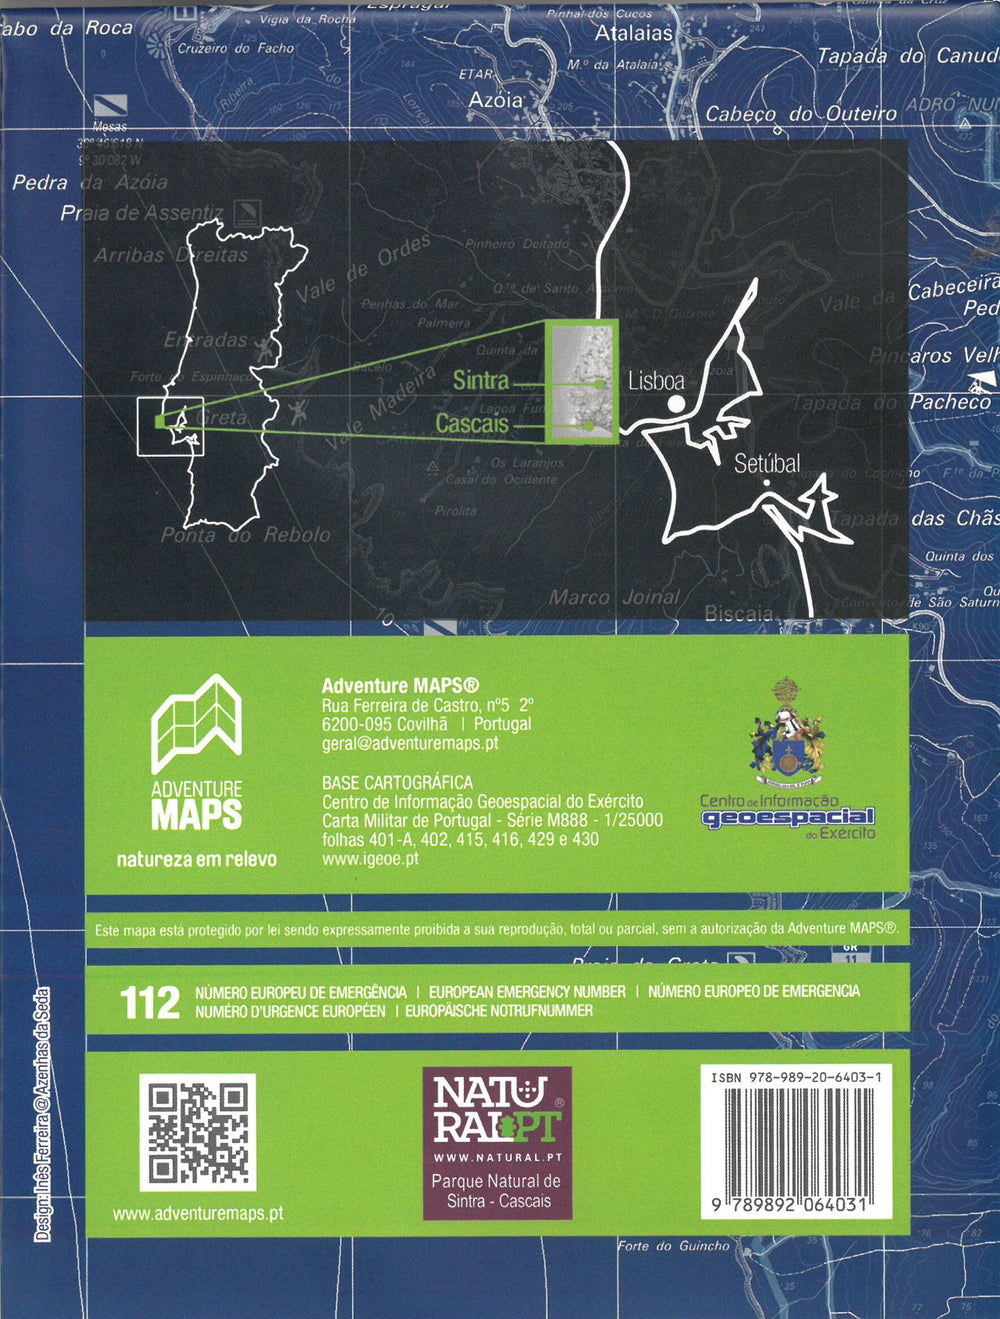 Carte topographique - Parque Natural de Sintra Cascais (Portugal) | Adventure Maps carte pliée Adventure Maps 